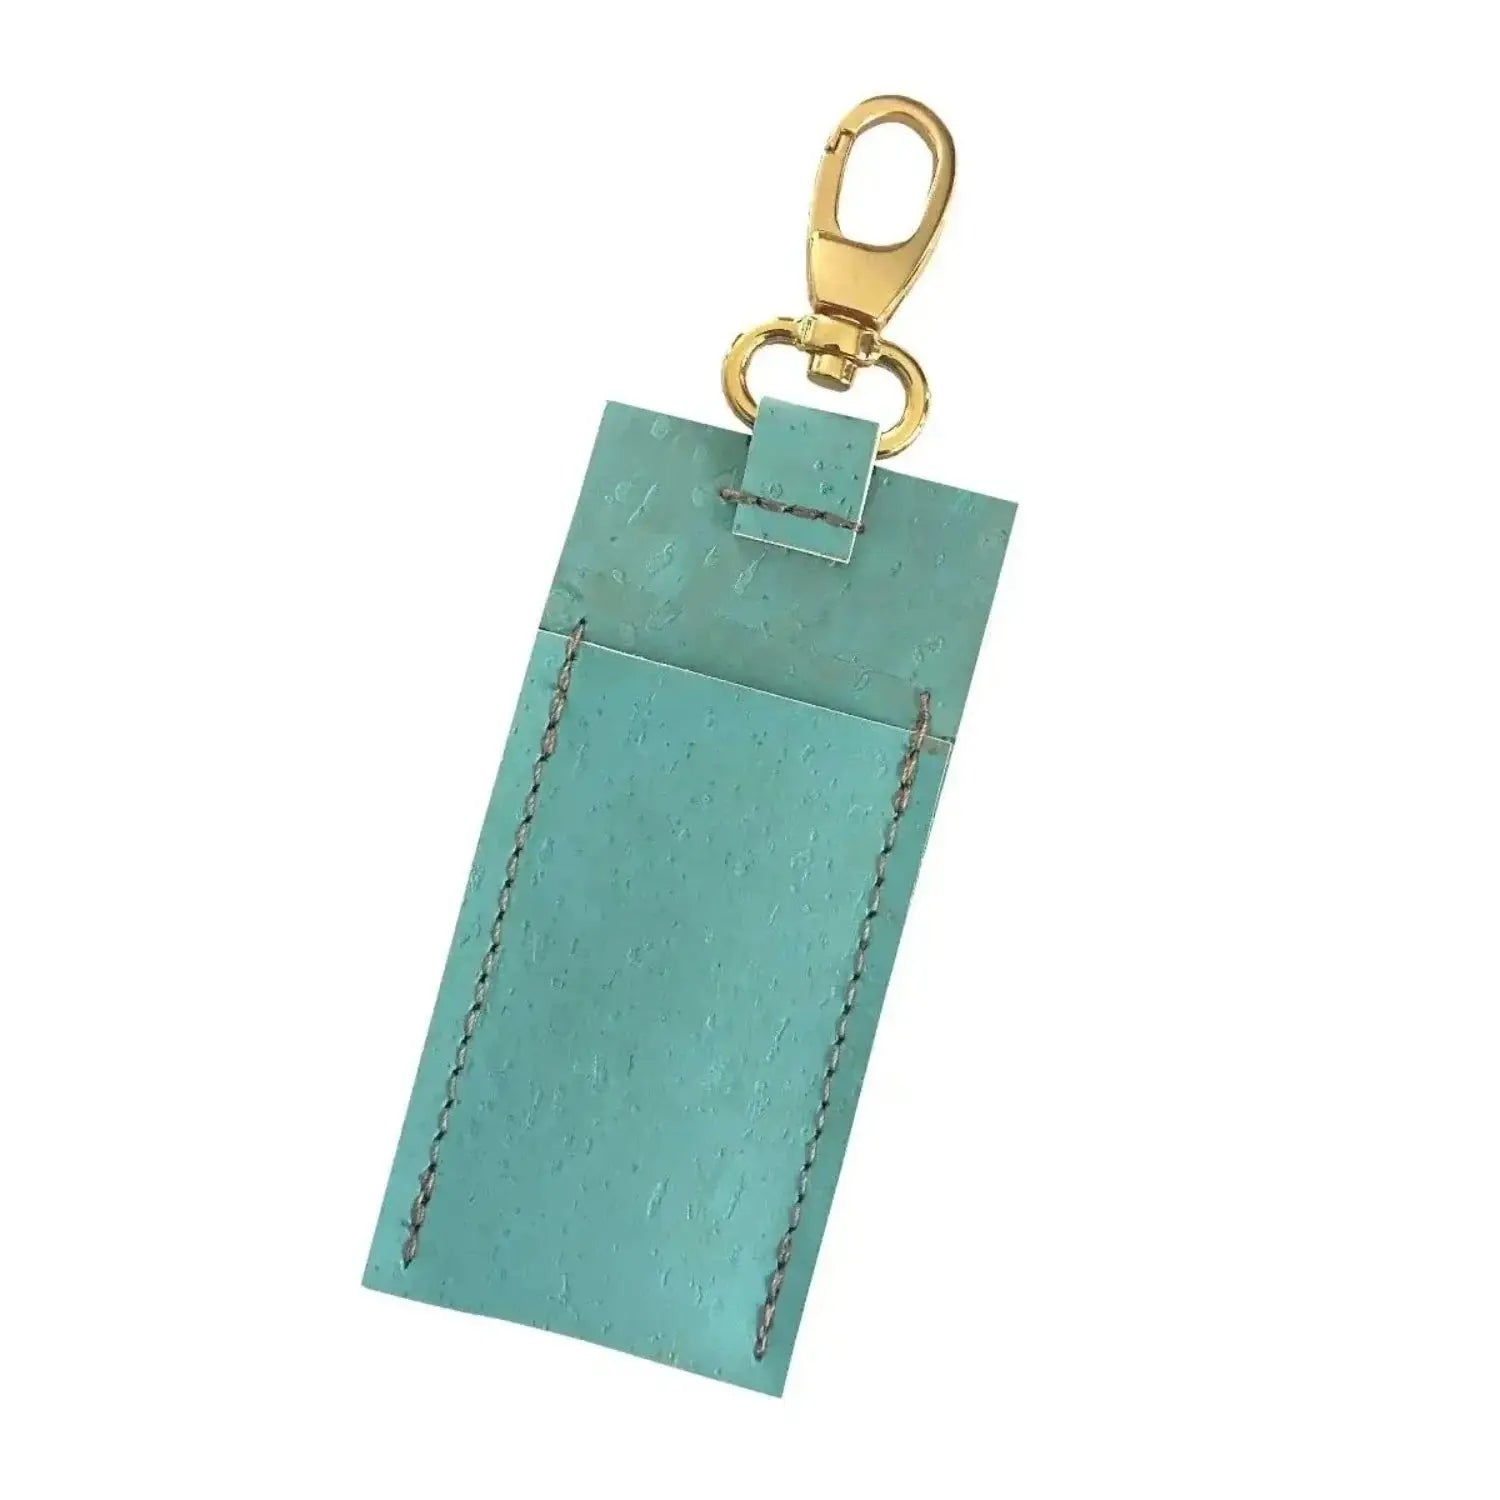 Lip Balm Holder Keychain in Blue